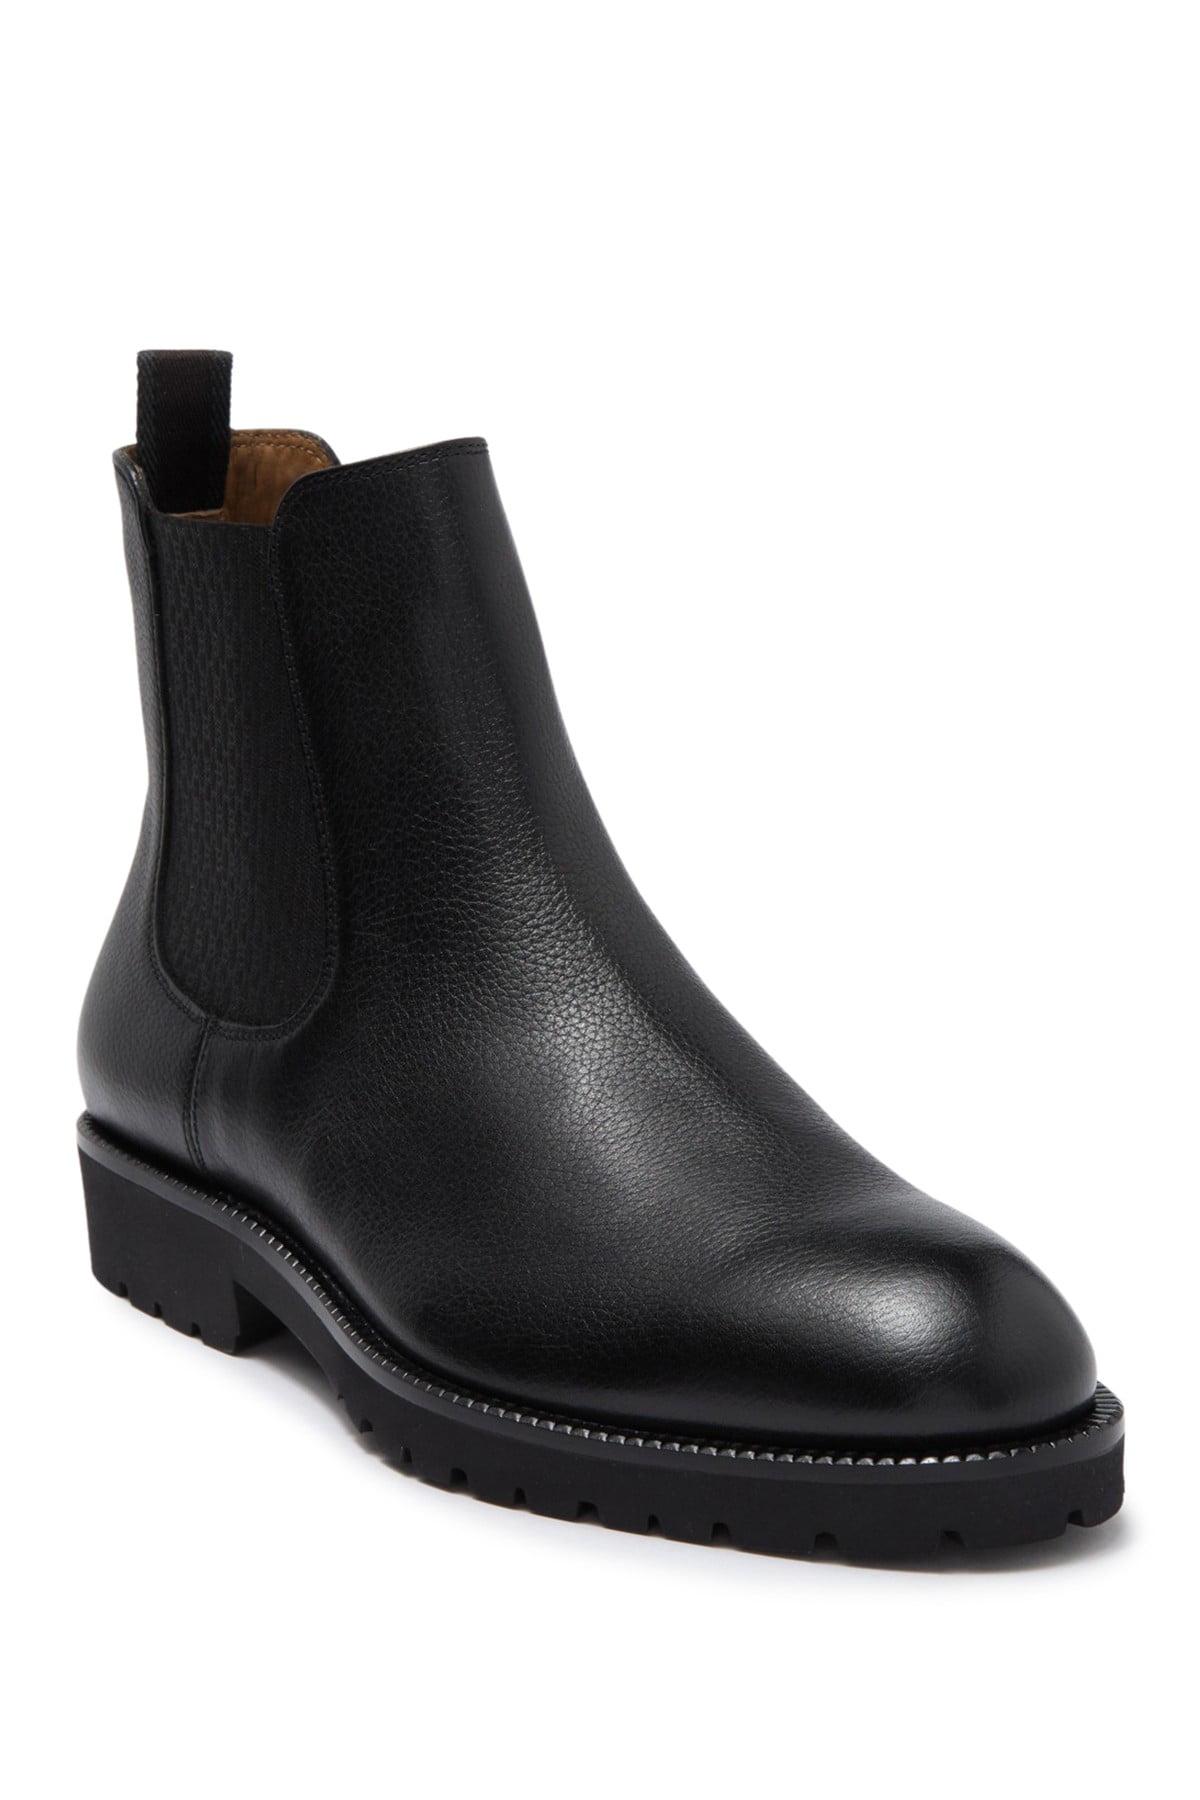 BOSS by HUGO BOSS Leather Eden Lug Chelsea Boot in Black for Men - Lyst